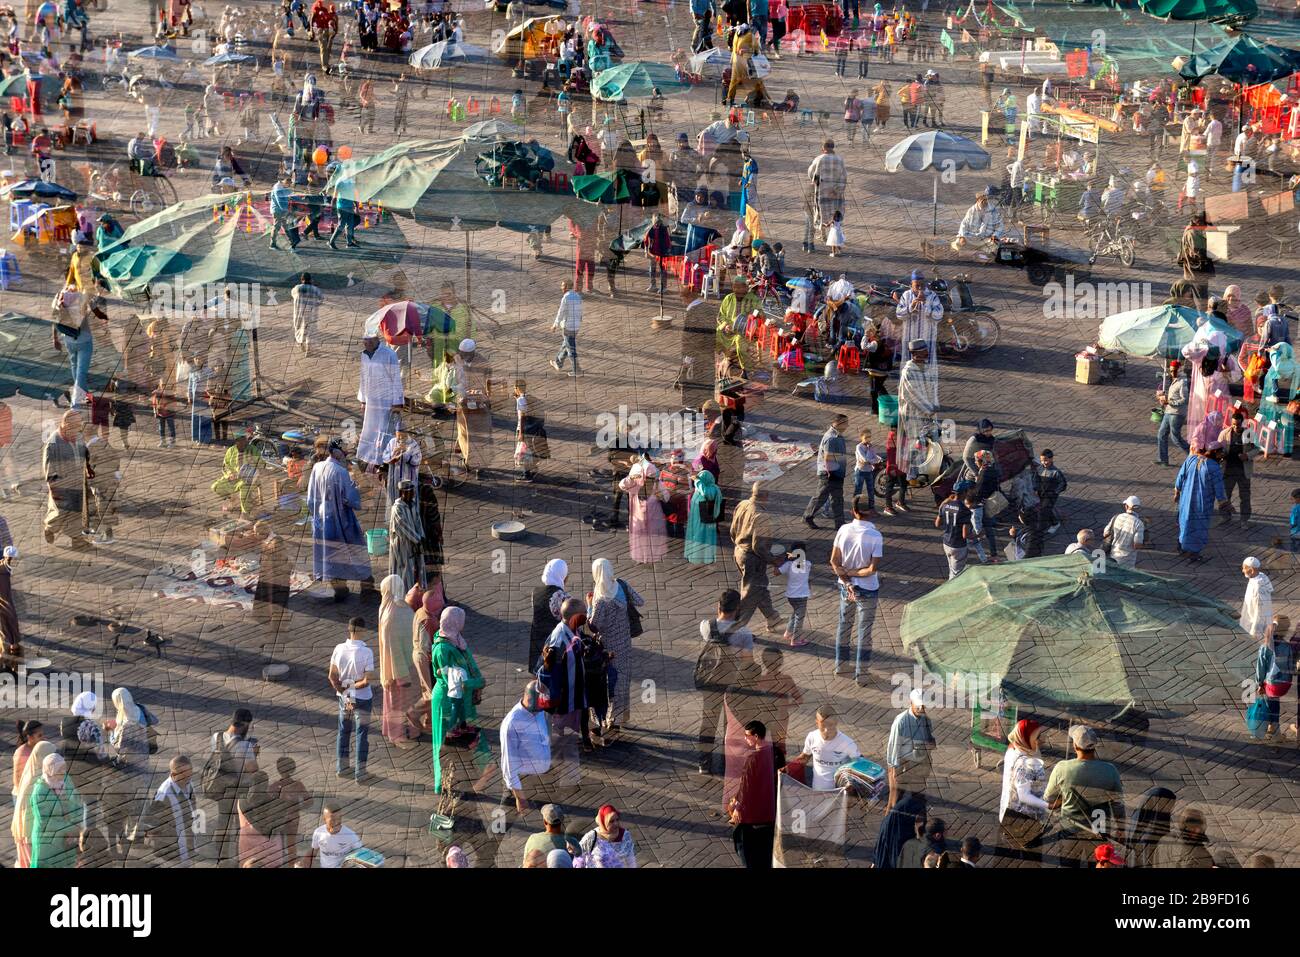 Geschäftige Szene mit vielen Menschen, die auf dem berühmten Djemaa el Fna Platz (Einheimische und Touristen) laufen und stehen, 6. November 2017, Marrakesch, Marokko. Tun Stockfoto